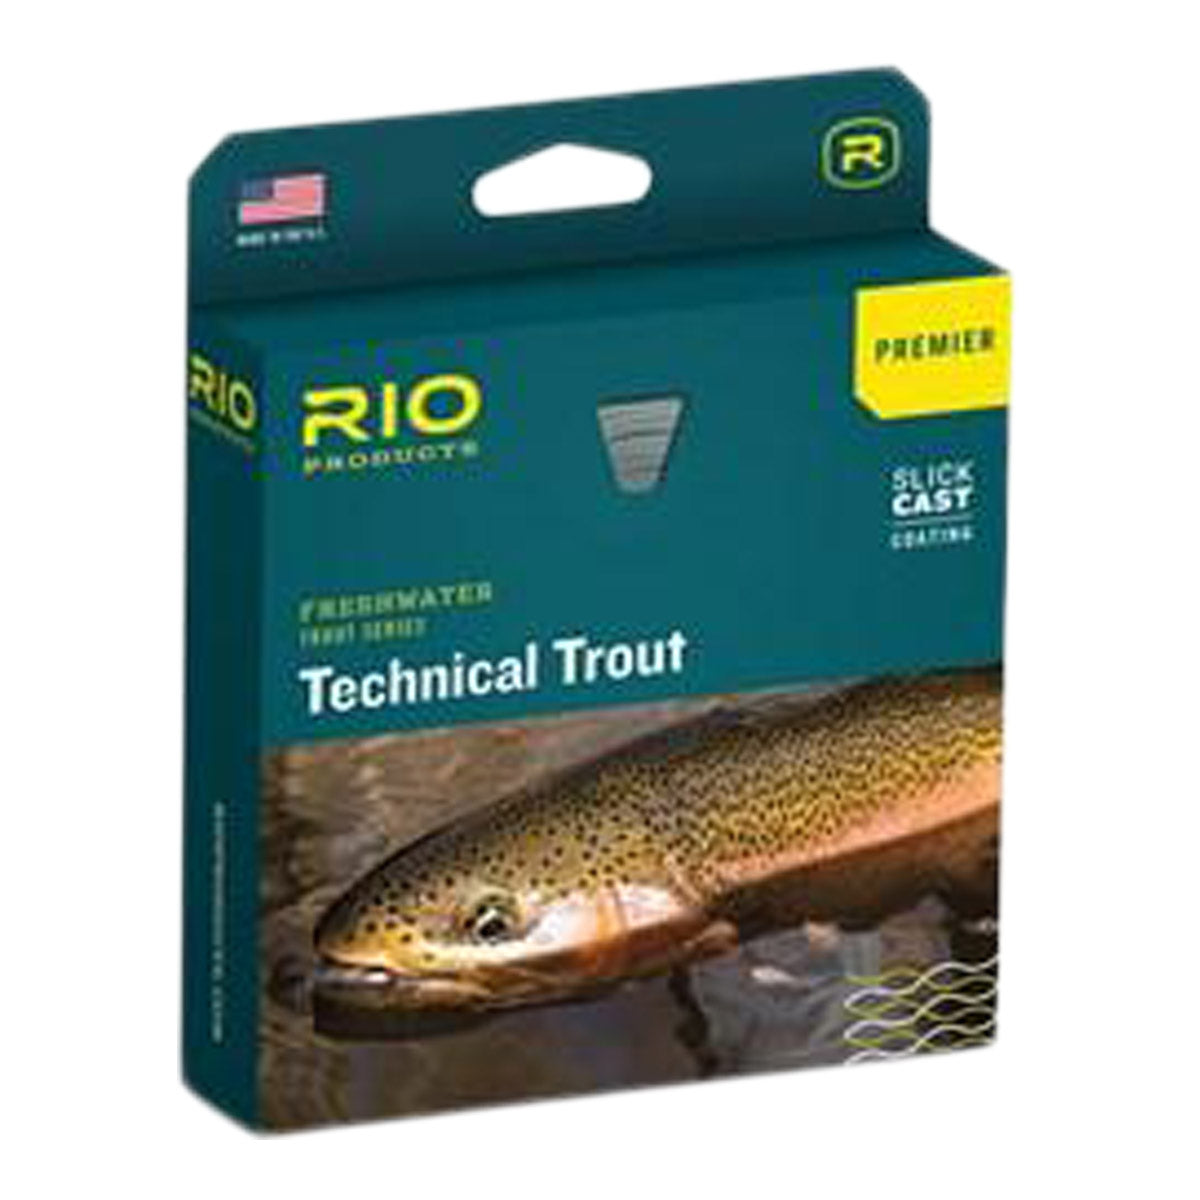 Rio Premier Technical Trout Line